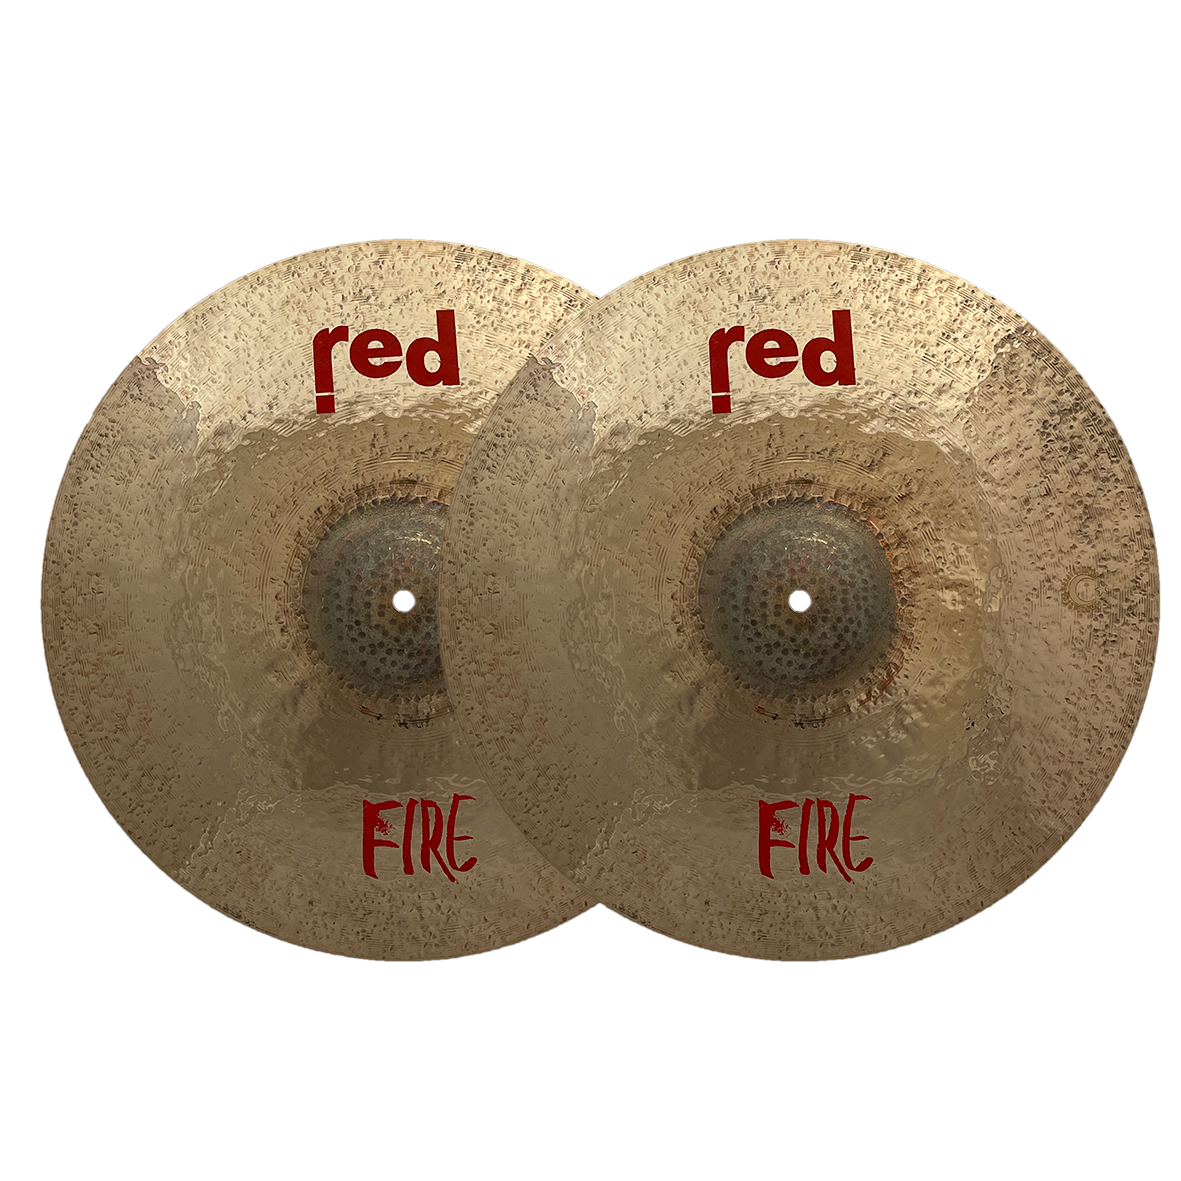 Fire Series Hi-hat Cymbals